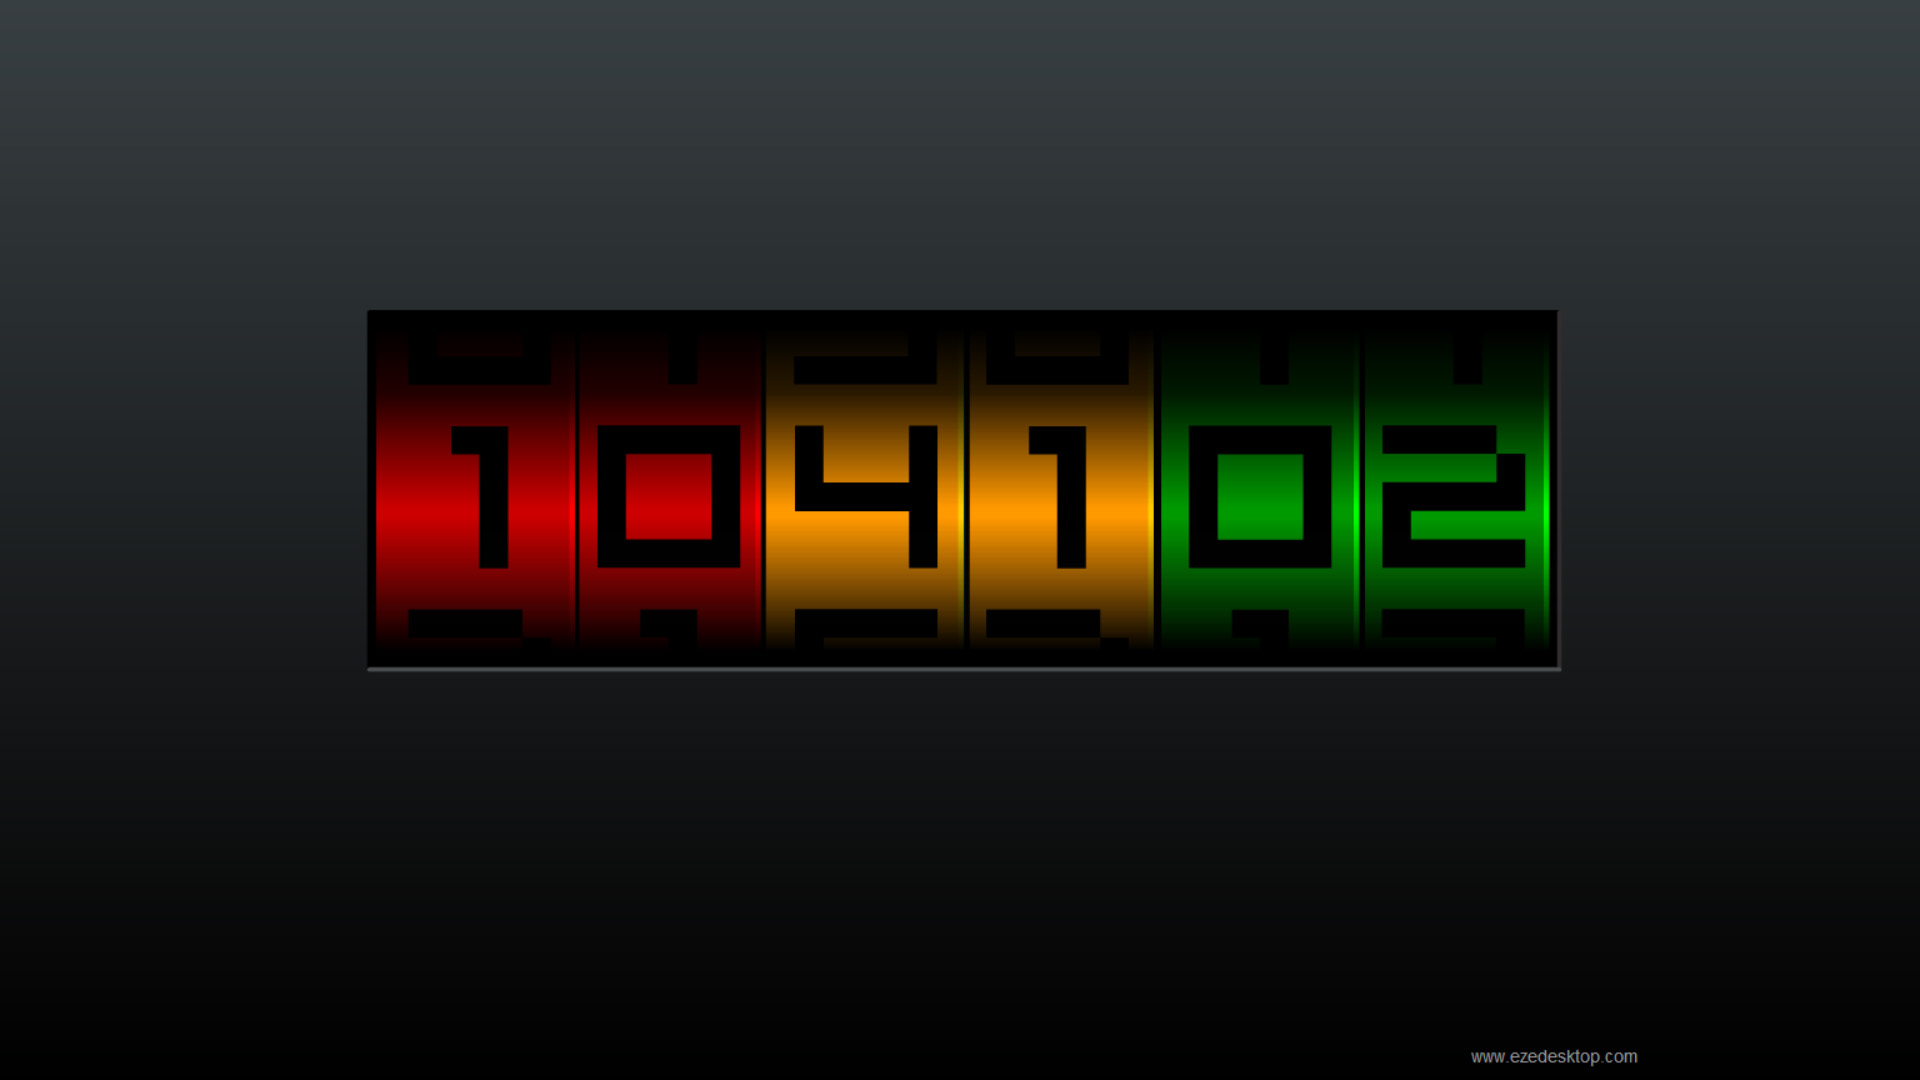 Windows 10 Digital Clock Screensaver - Numeric Clock Screensaver